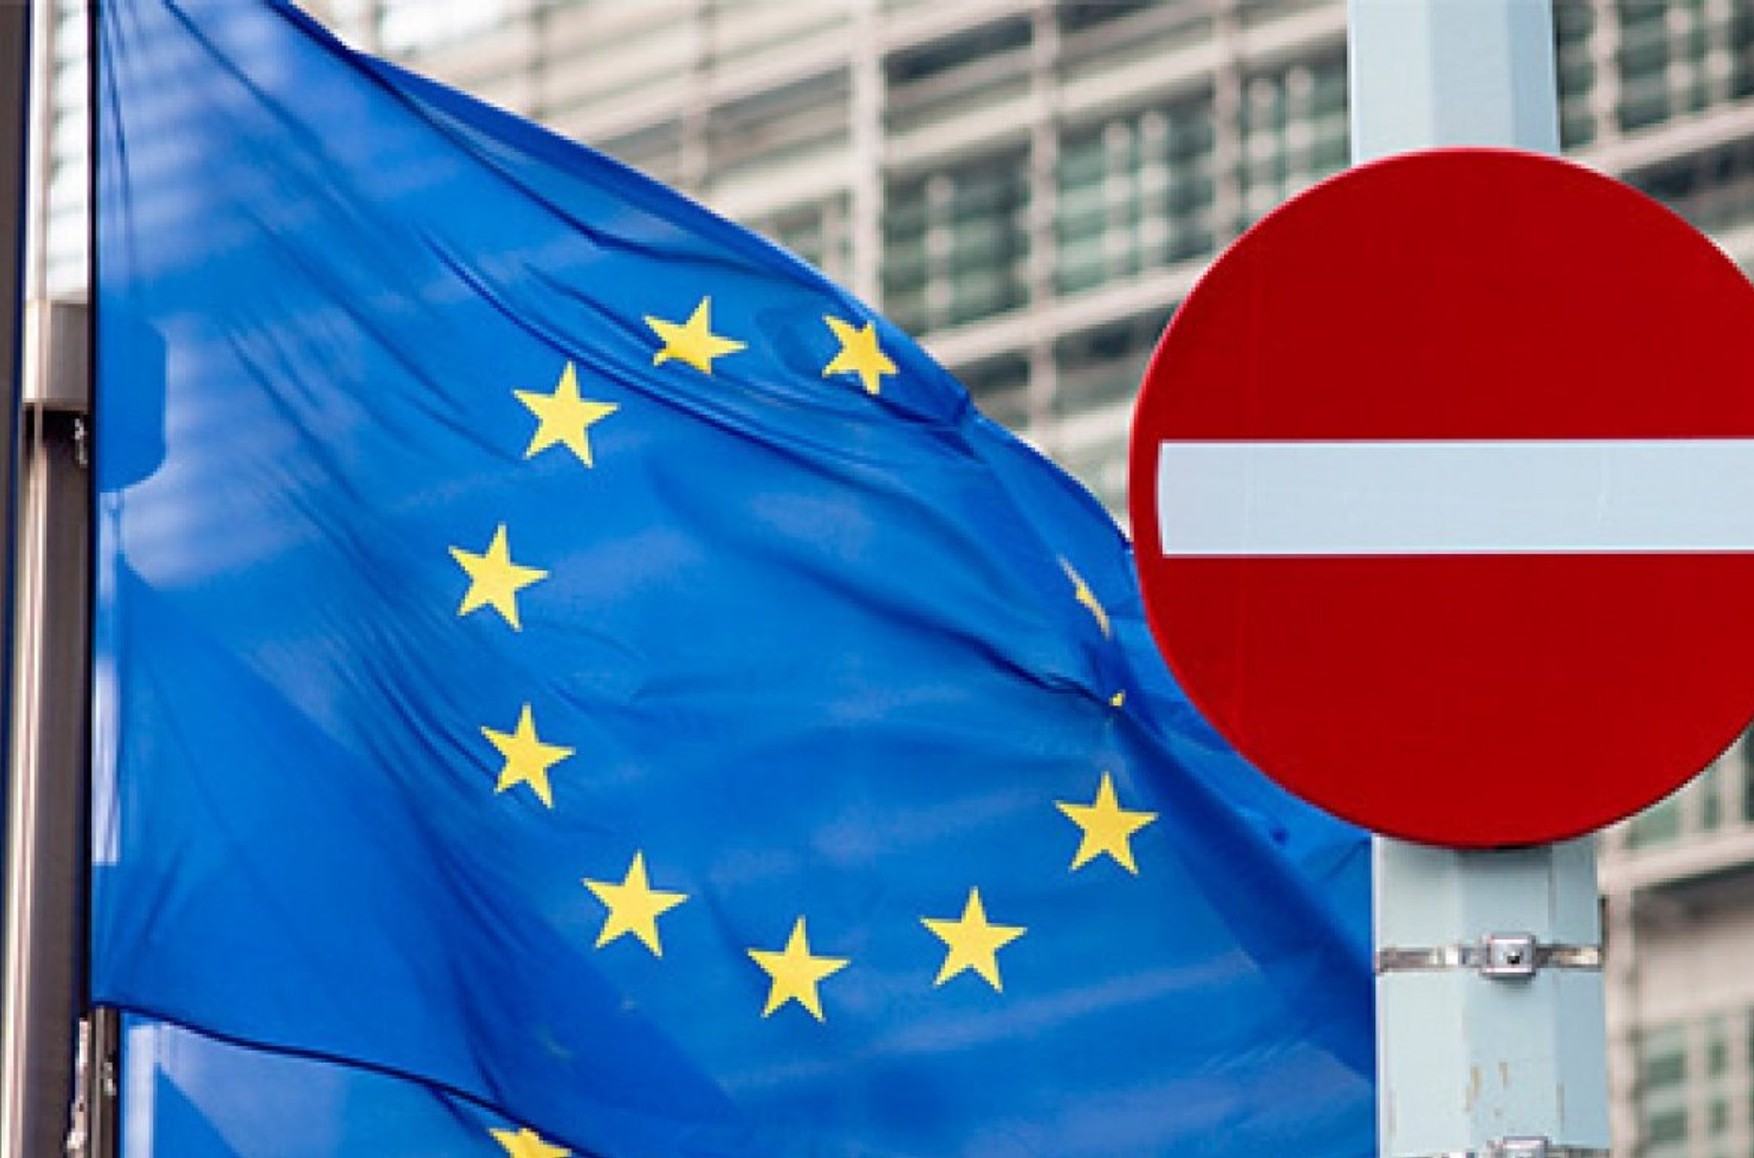 ЕС ввел новые санкции против РФ. Компаниям не будут присваиваться кредитные рейтинги, останавливаются поставки предметов роскоши